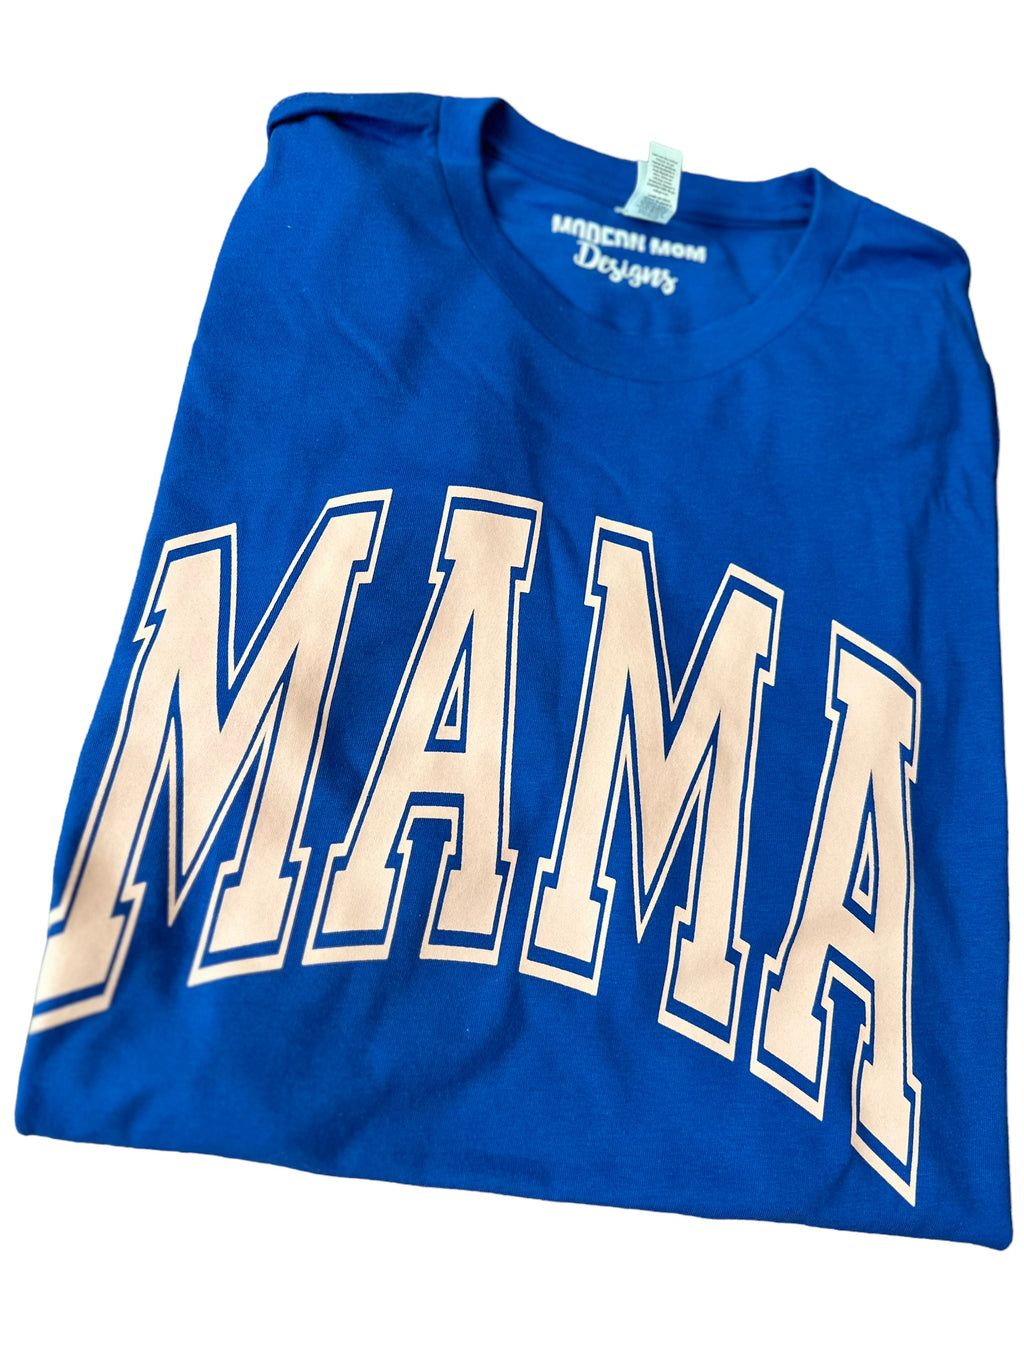 Mama Royal blue & baby pink tee shirt